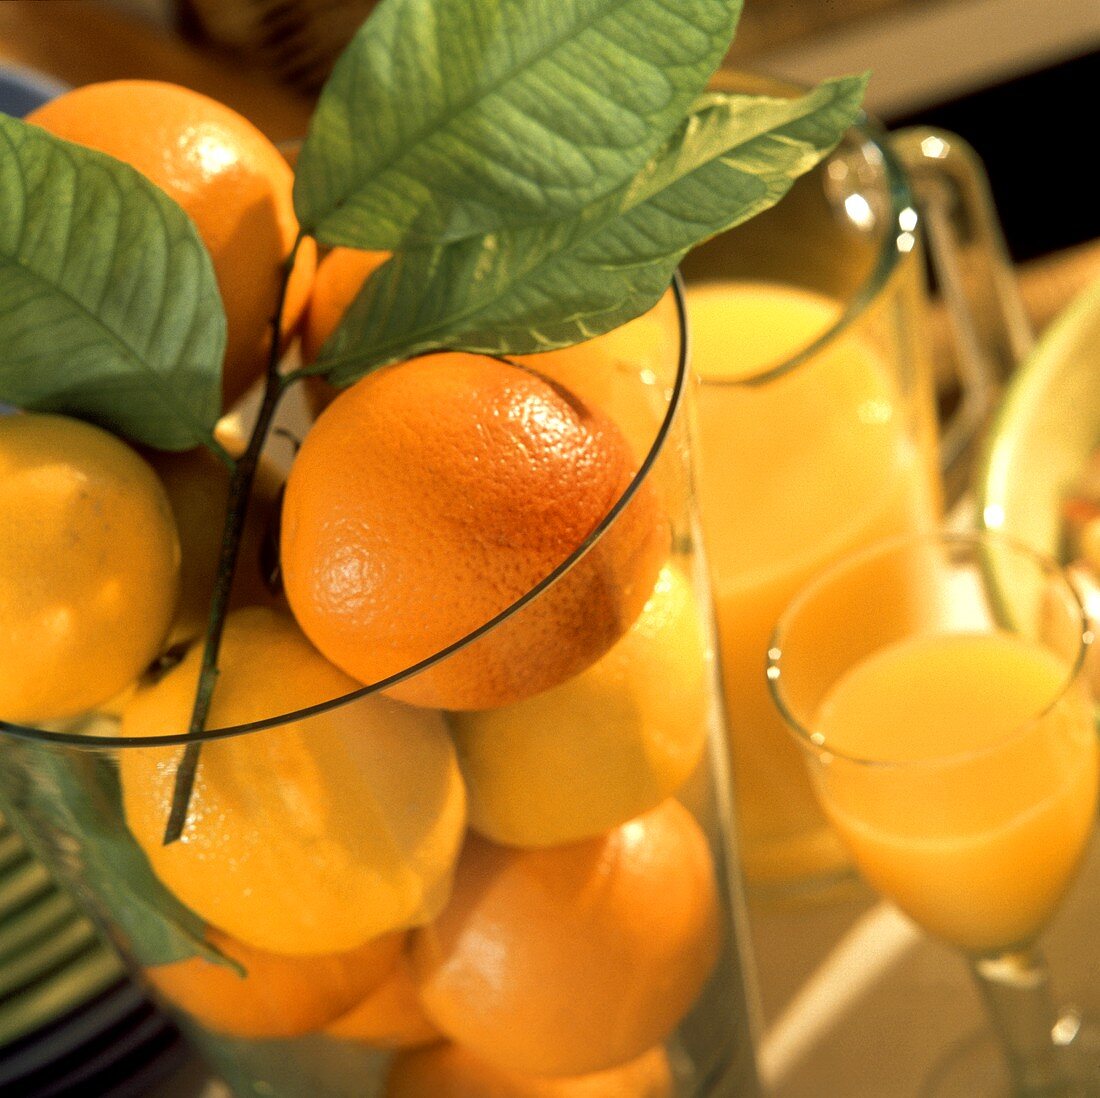 Zitronen und Orangen mit Blättern im Glas; Orangensaft